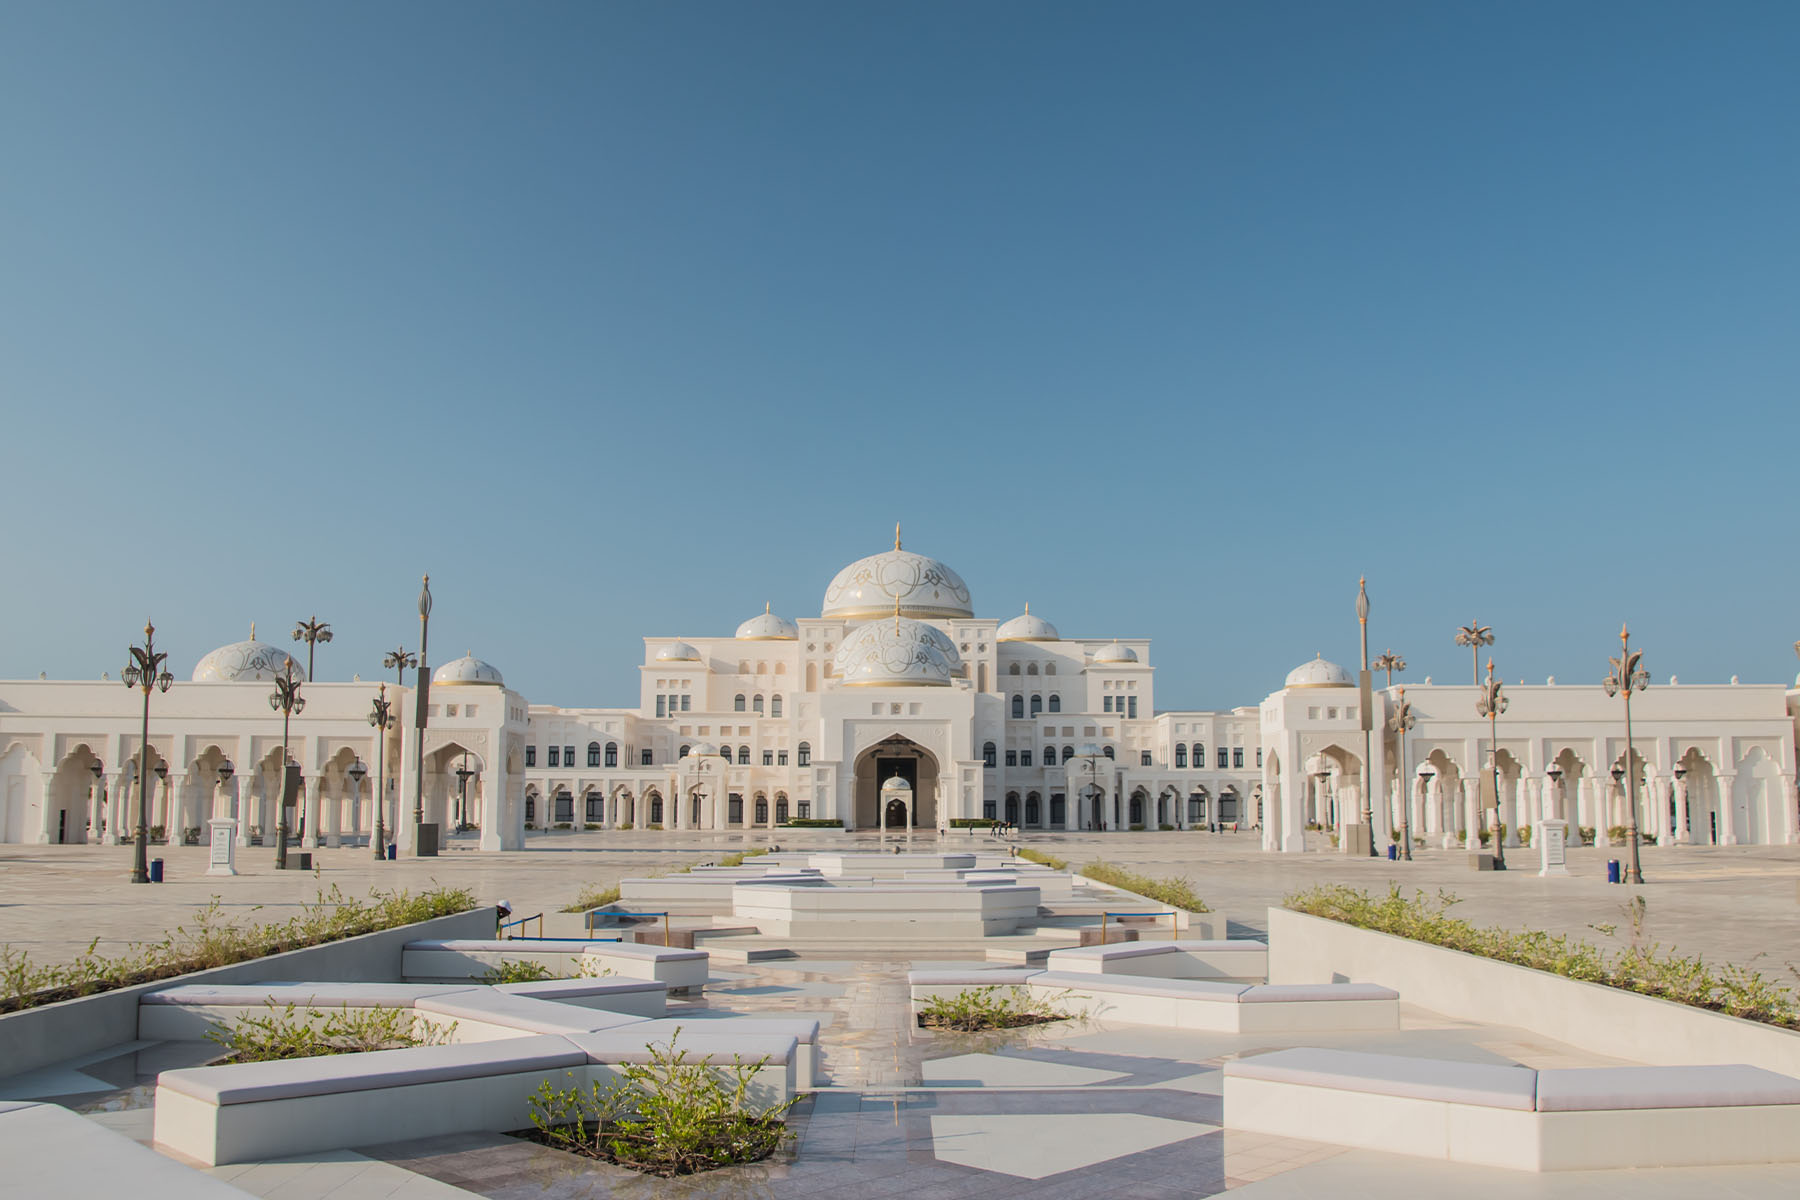 The Qasr Al Watan presidential palace in Abu Dhabi